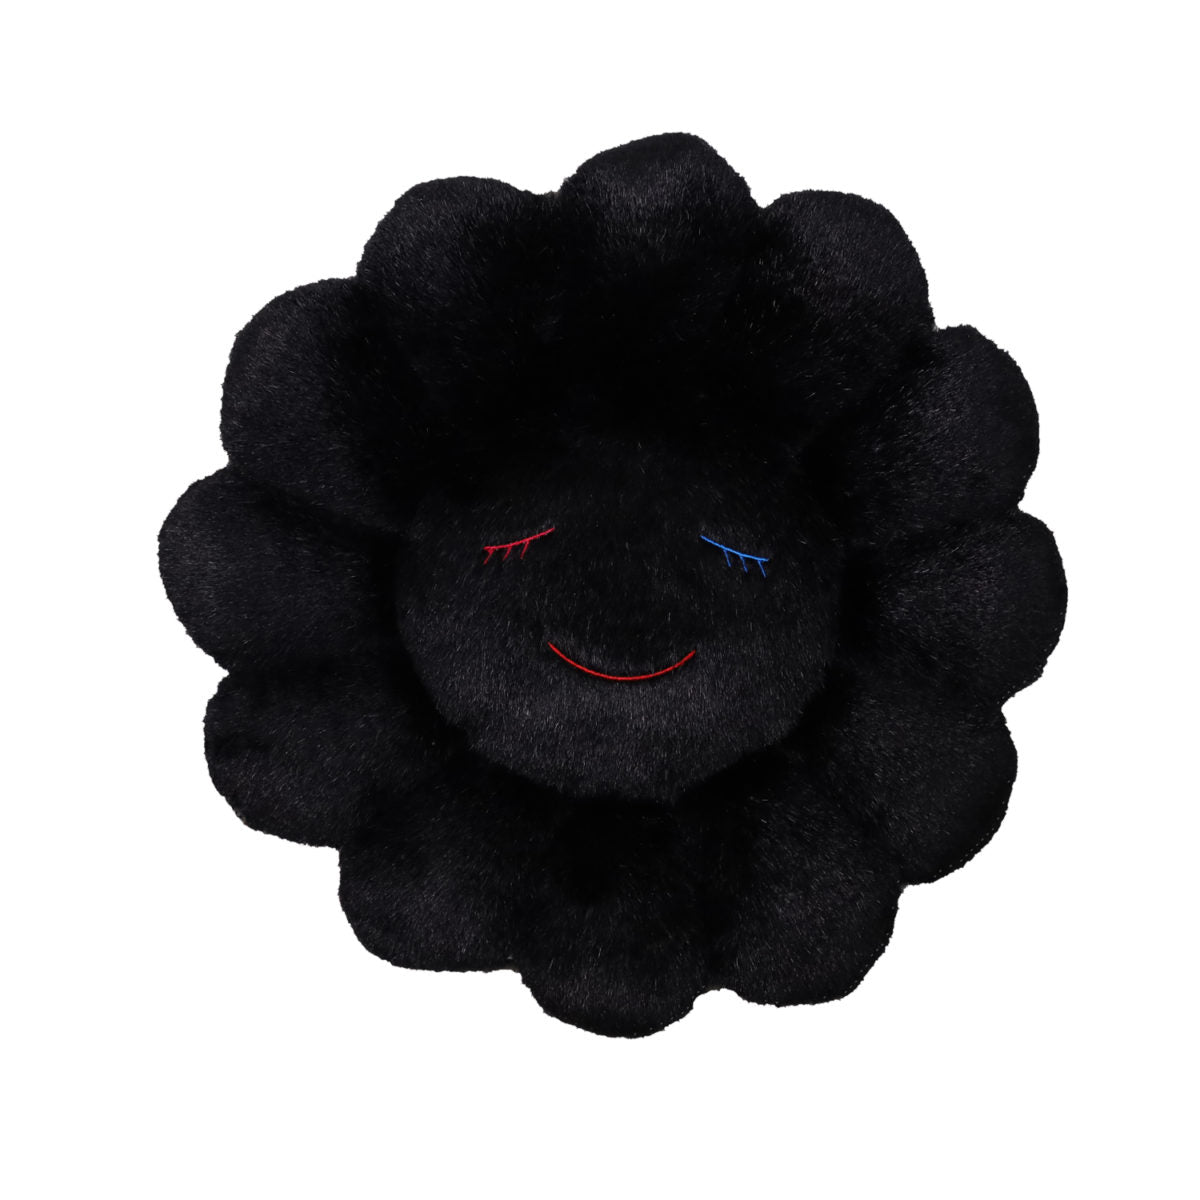 TAKASHI MURAKAMI - Flower Cushion 30 cm (Black), 2020